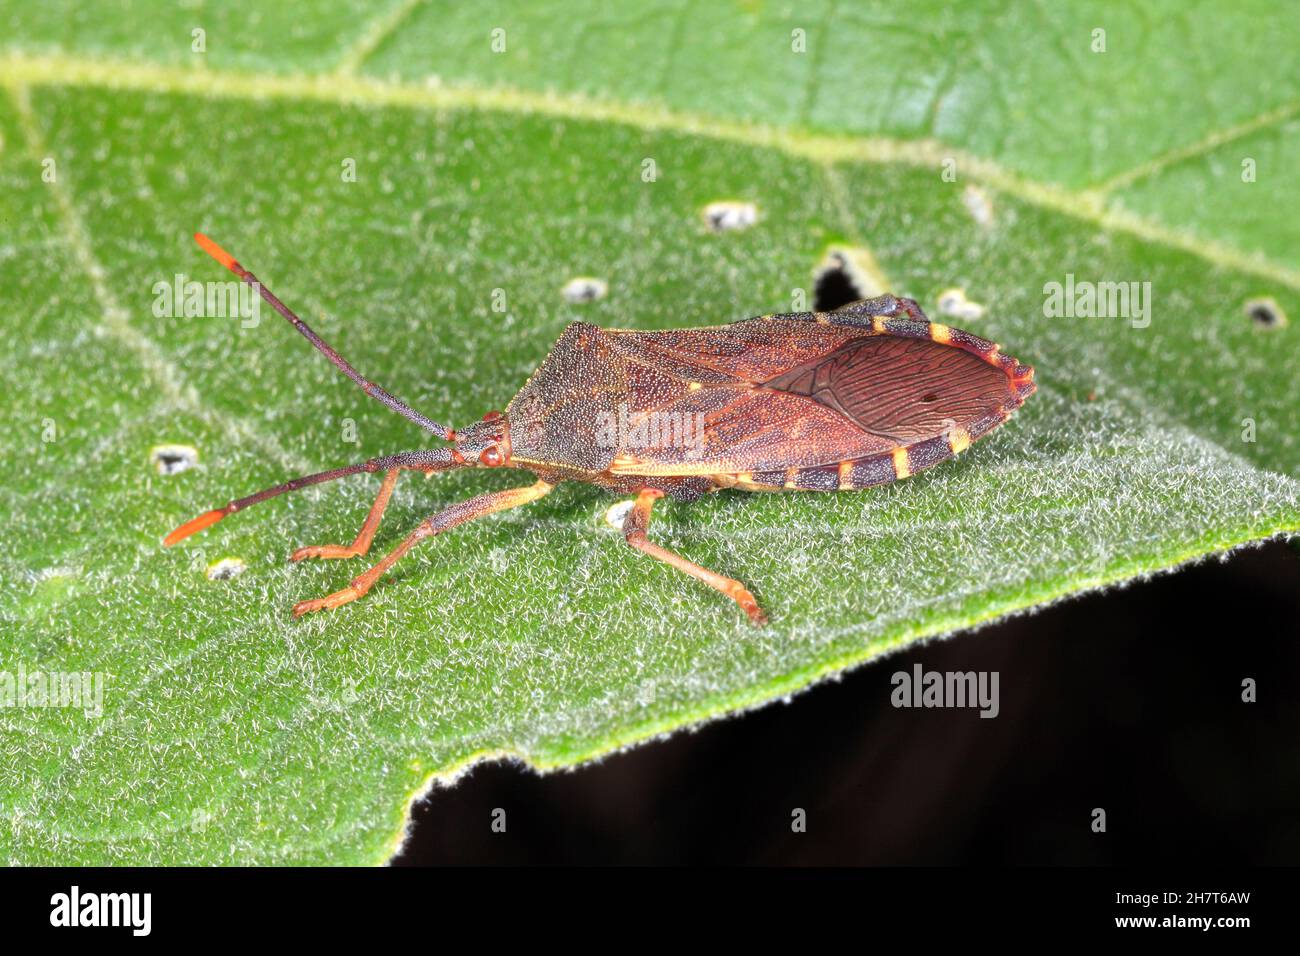 Eucalipto Tip-wilter Bug, Amorbus alternatus. Adulto. Noto anche come Eucalyptus Tip Bug, Gumtree Tip Bug, Squash Bug, Clown bug e Coreid Bug. Foto Stock